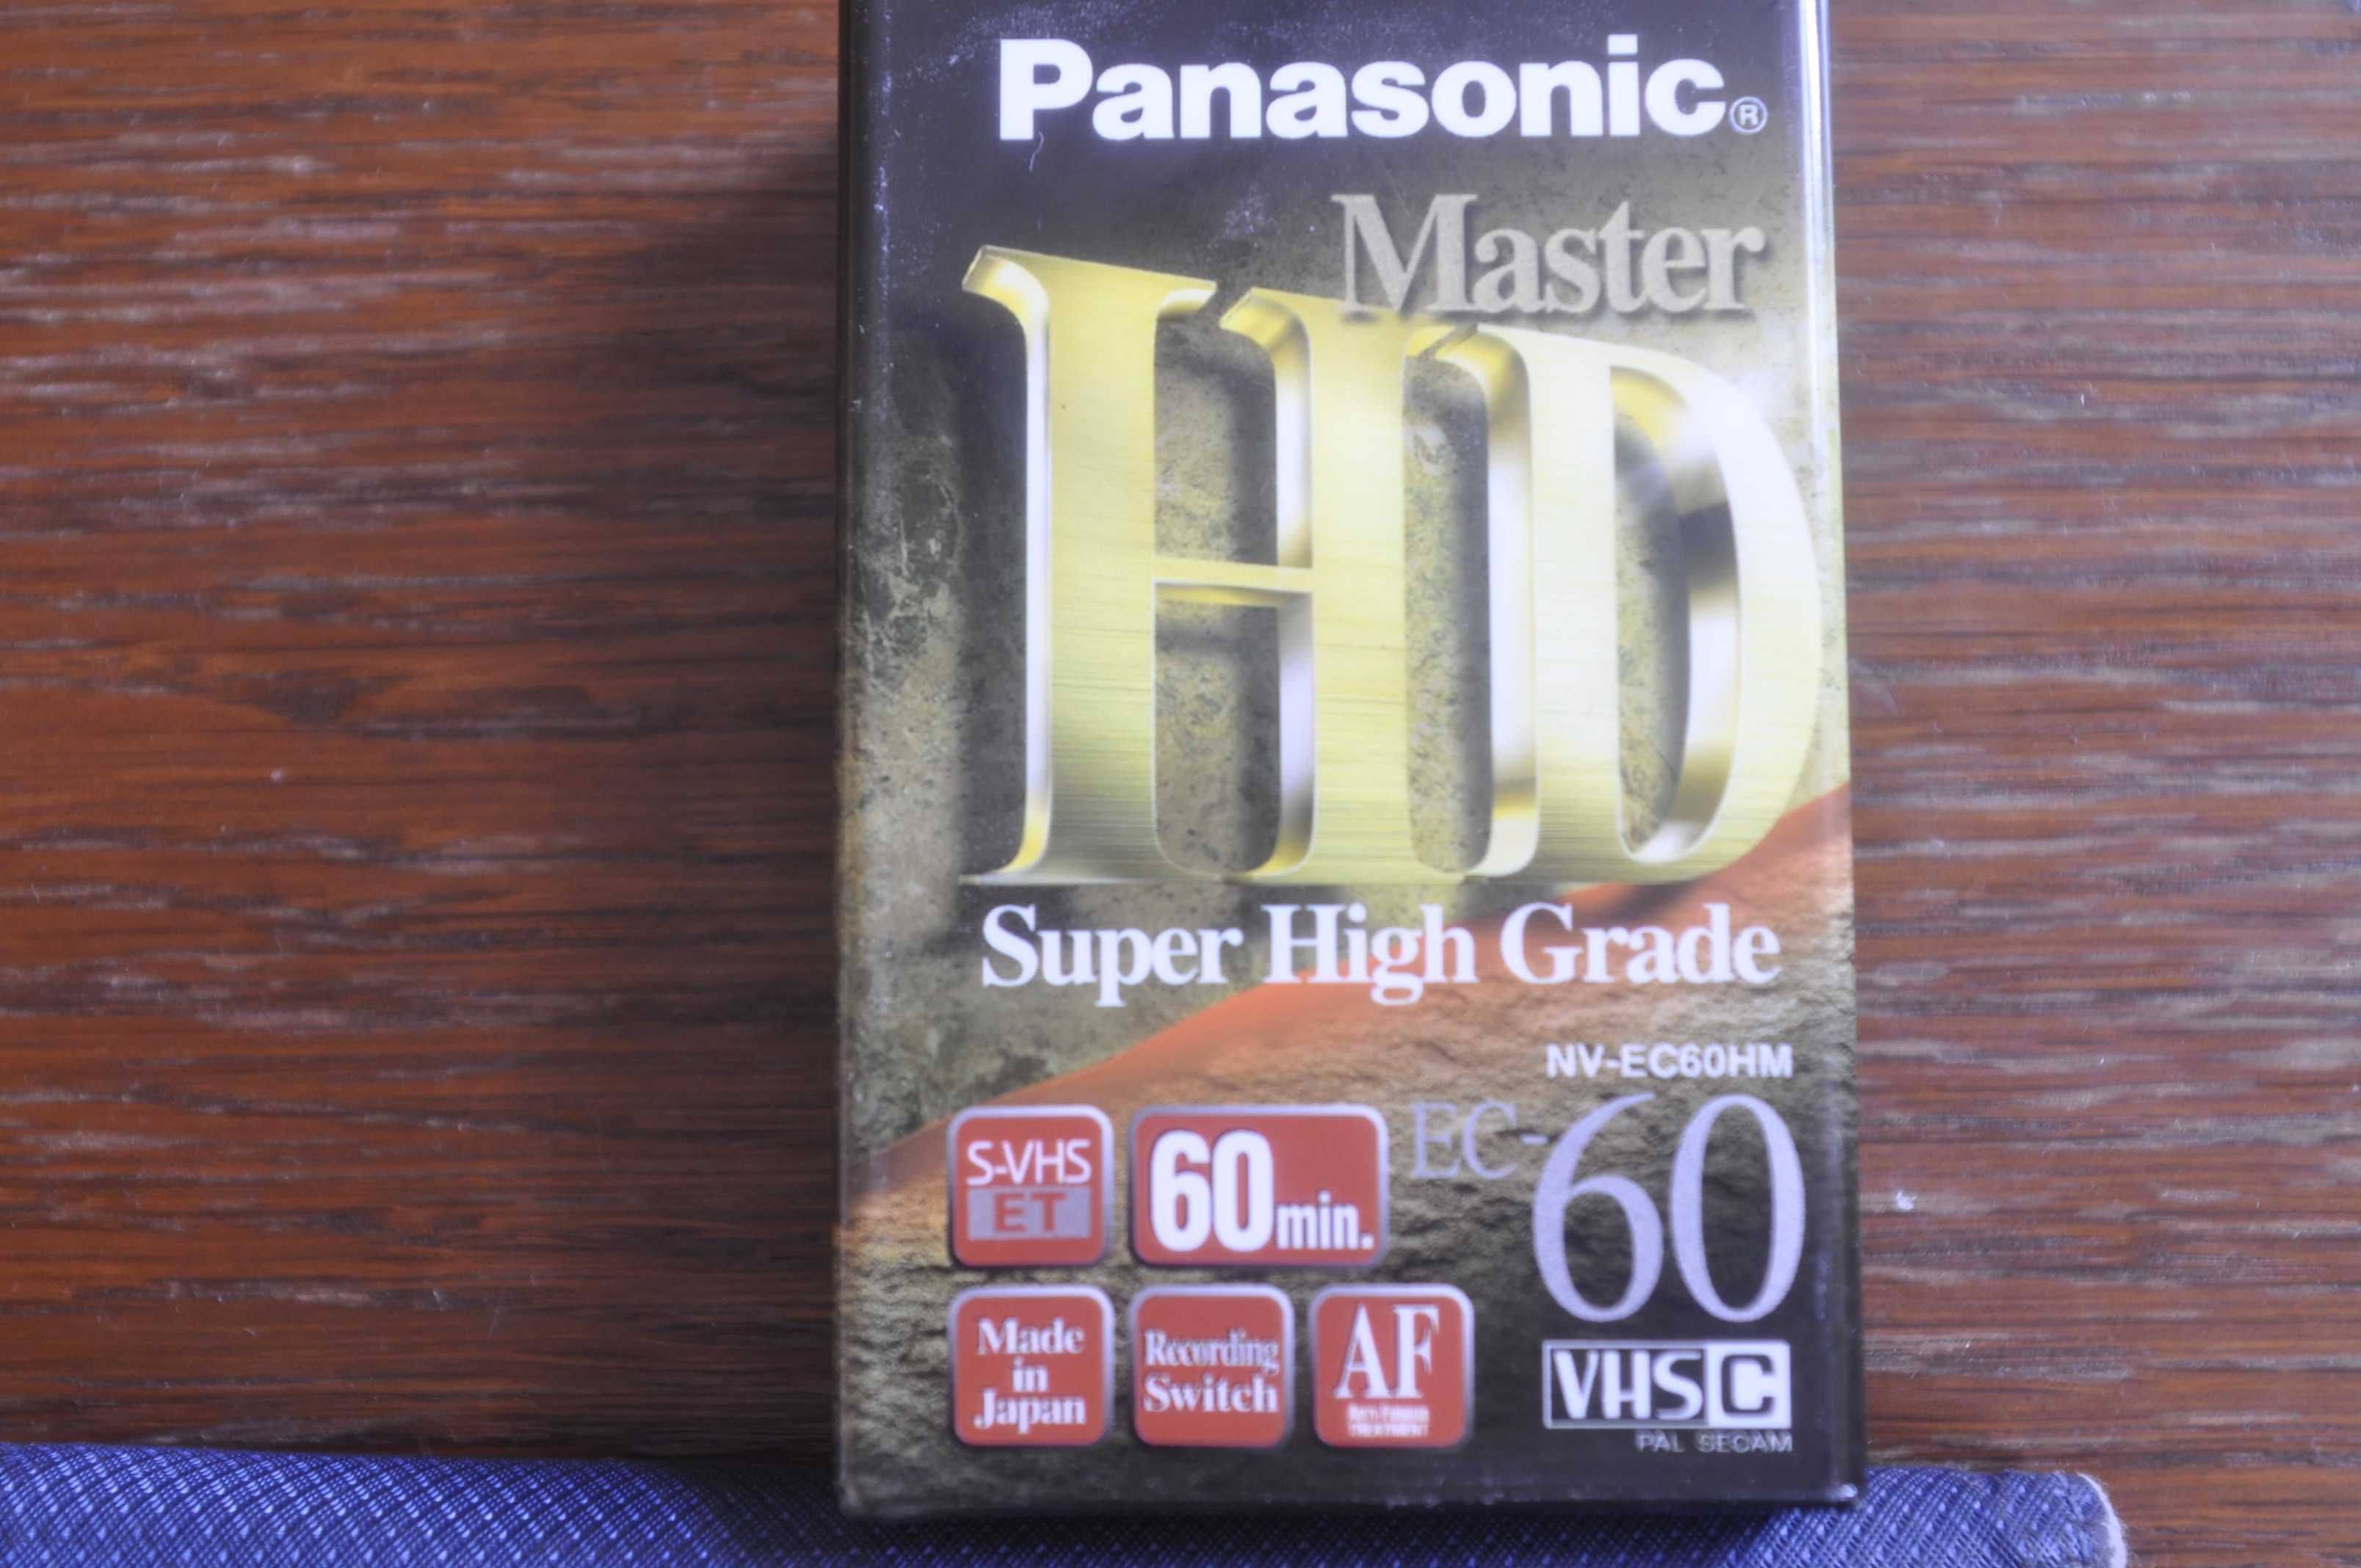 Casete video VHSc Emtec  PHG HI-FI 45min, Panasonic Master HD 60 min